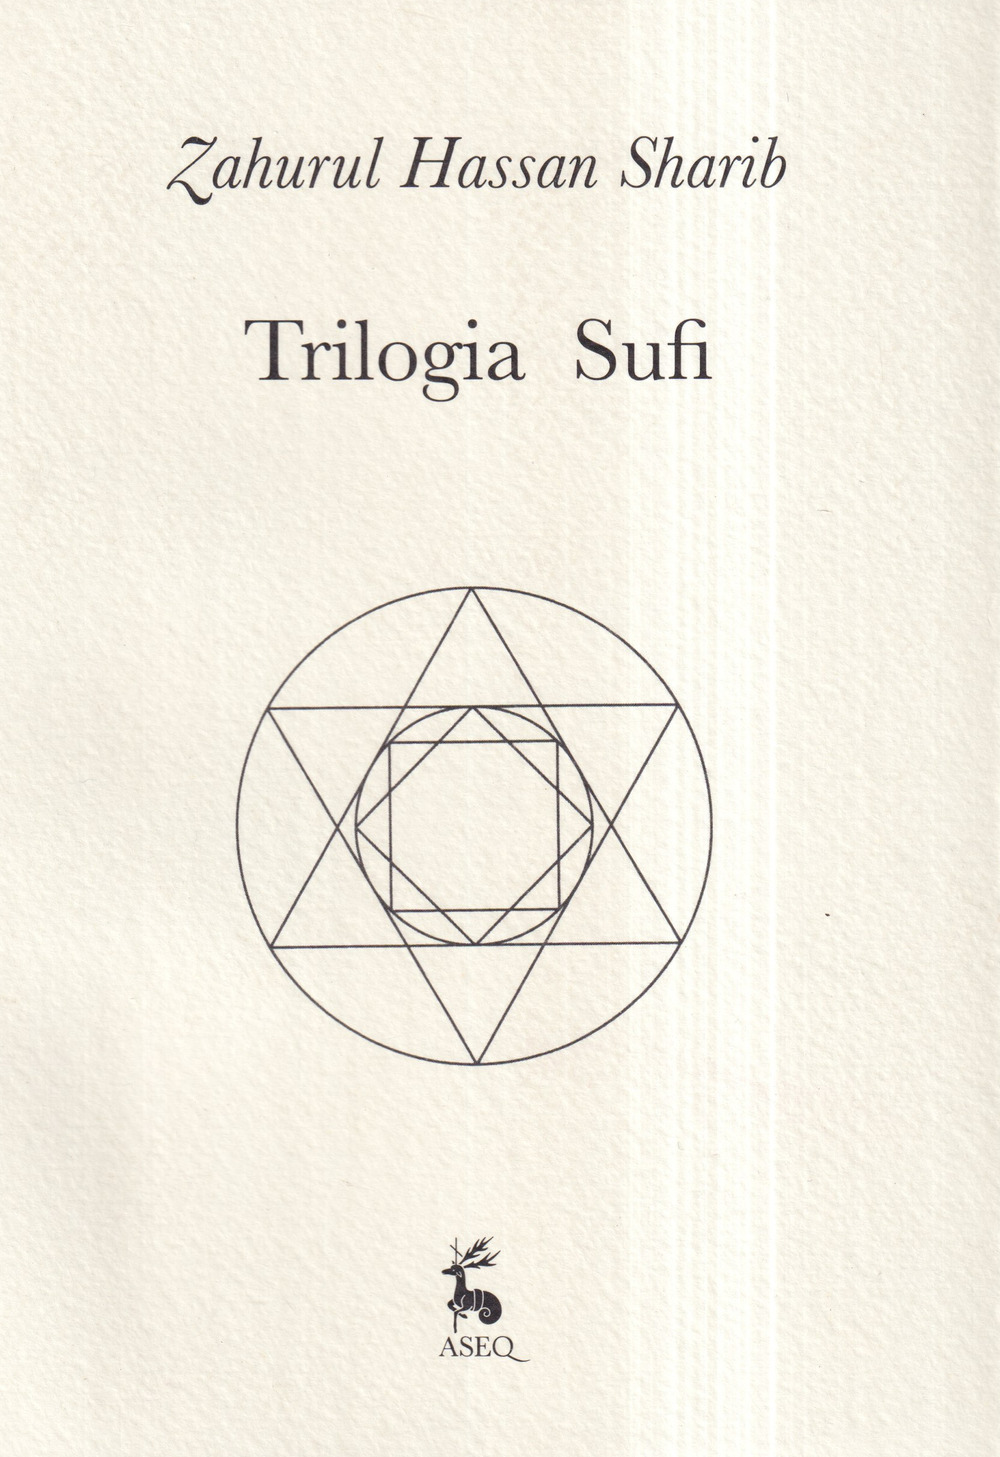 Trilogia sufi